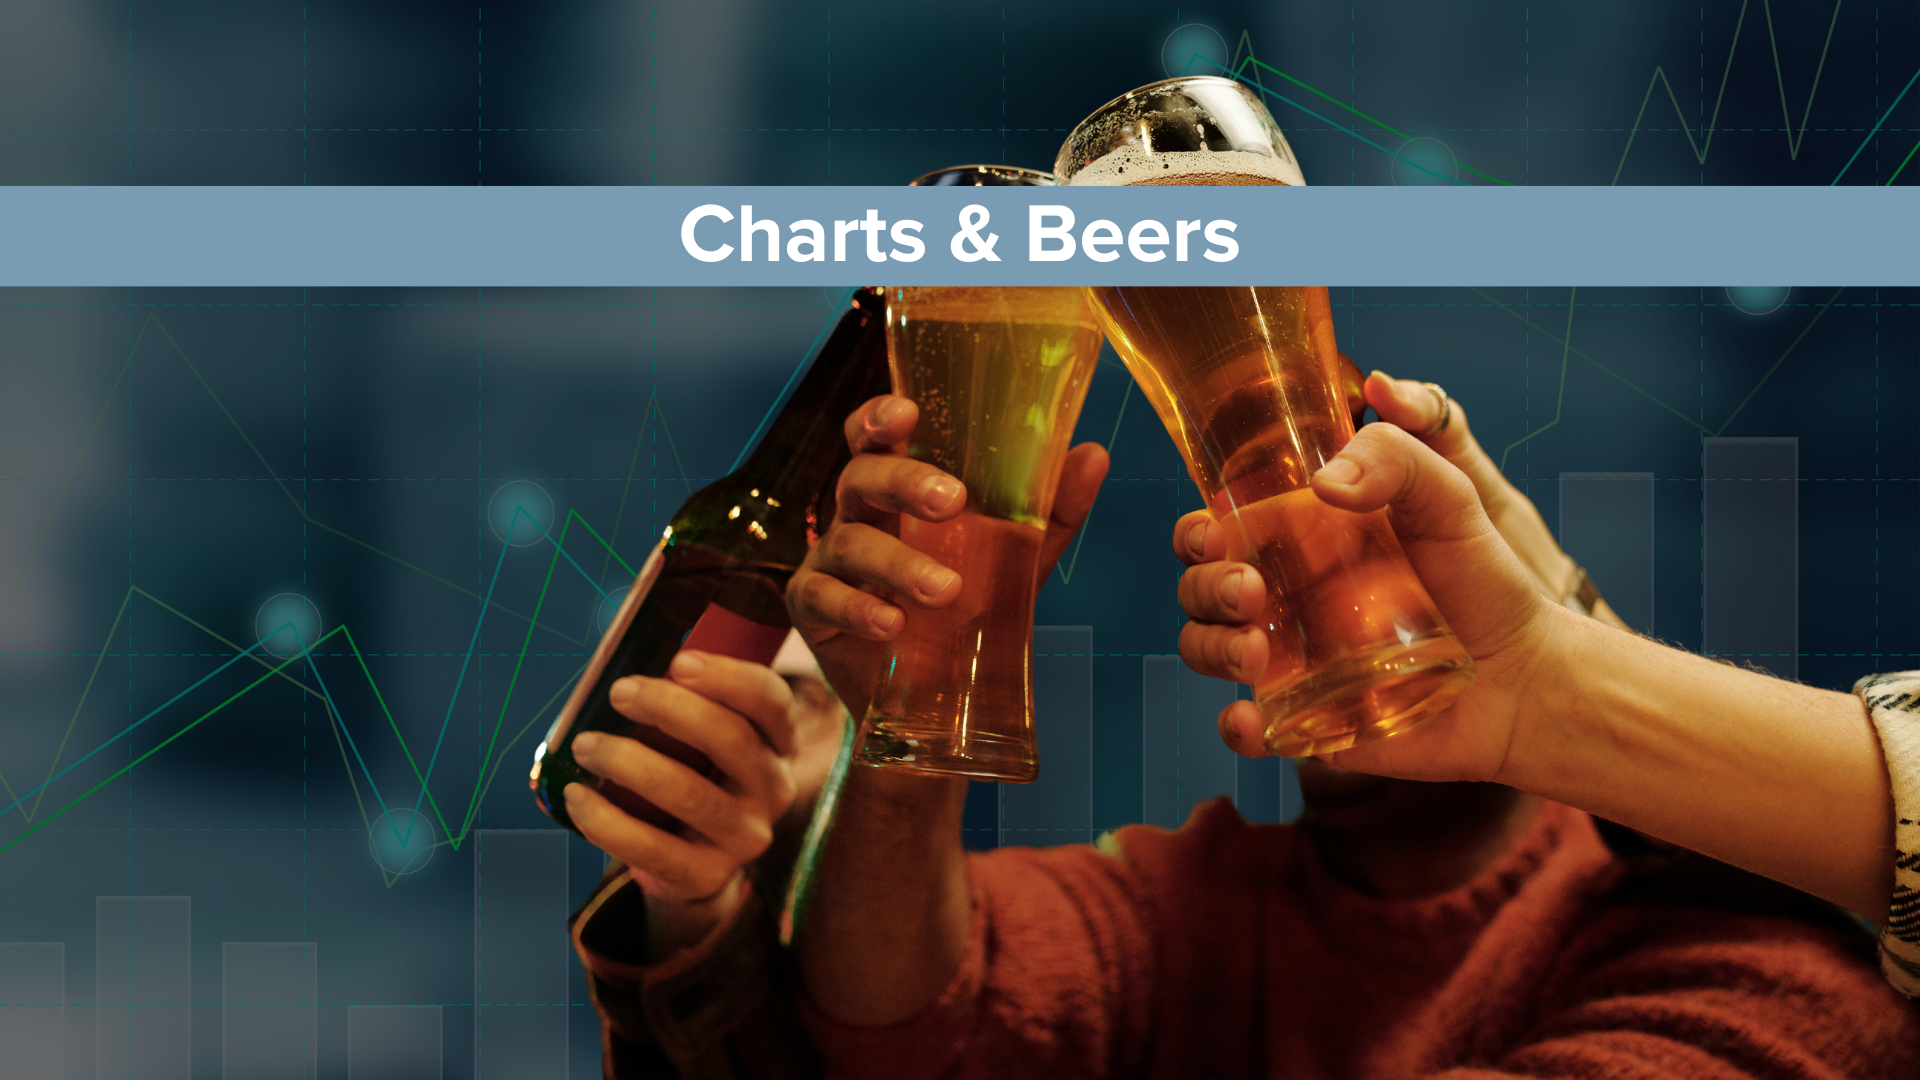 Charts of the week with beer et billede med hænder der skåler med øl foran en baggrund med en graf